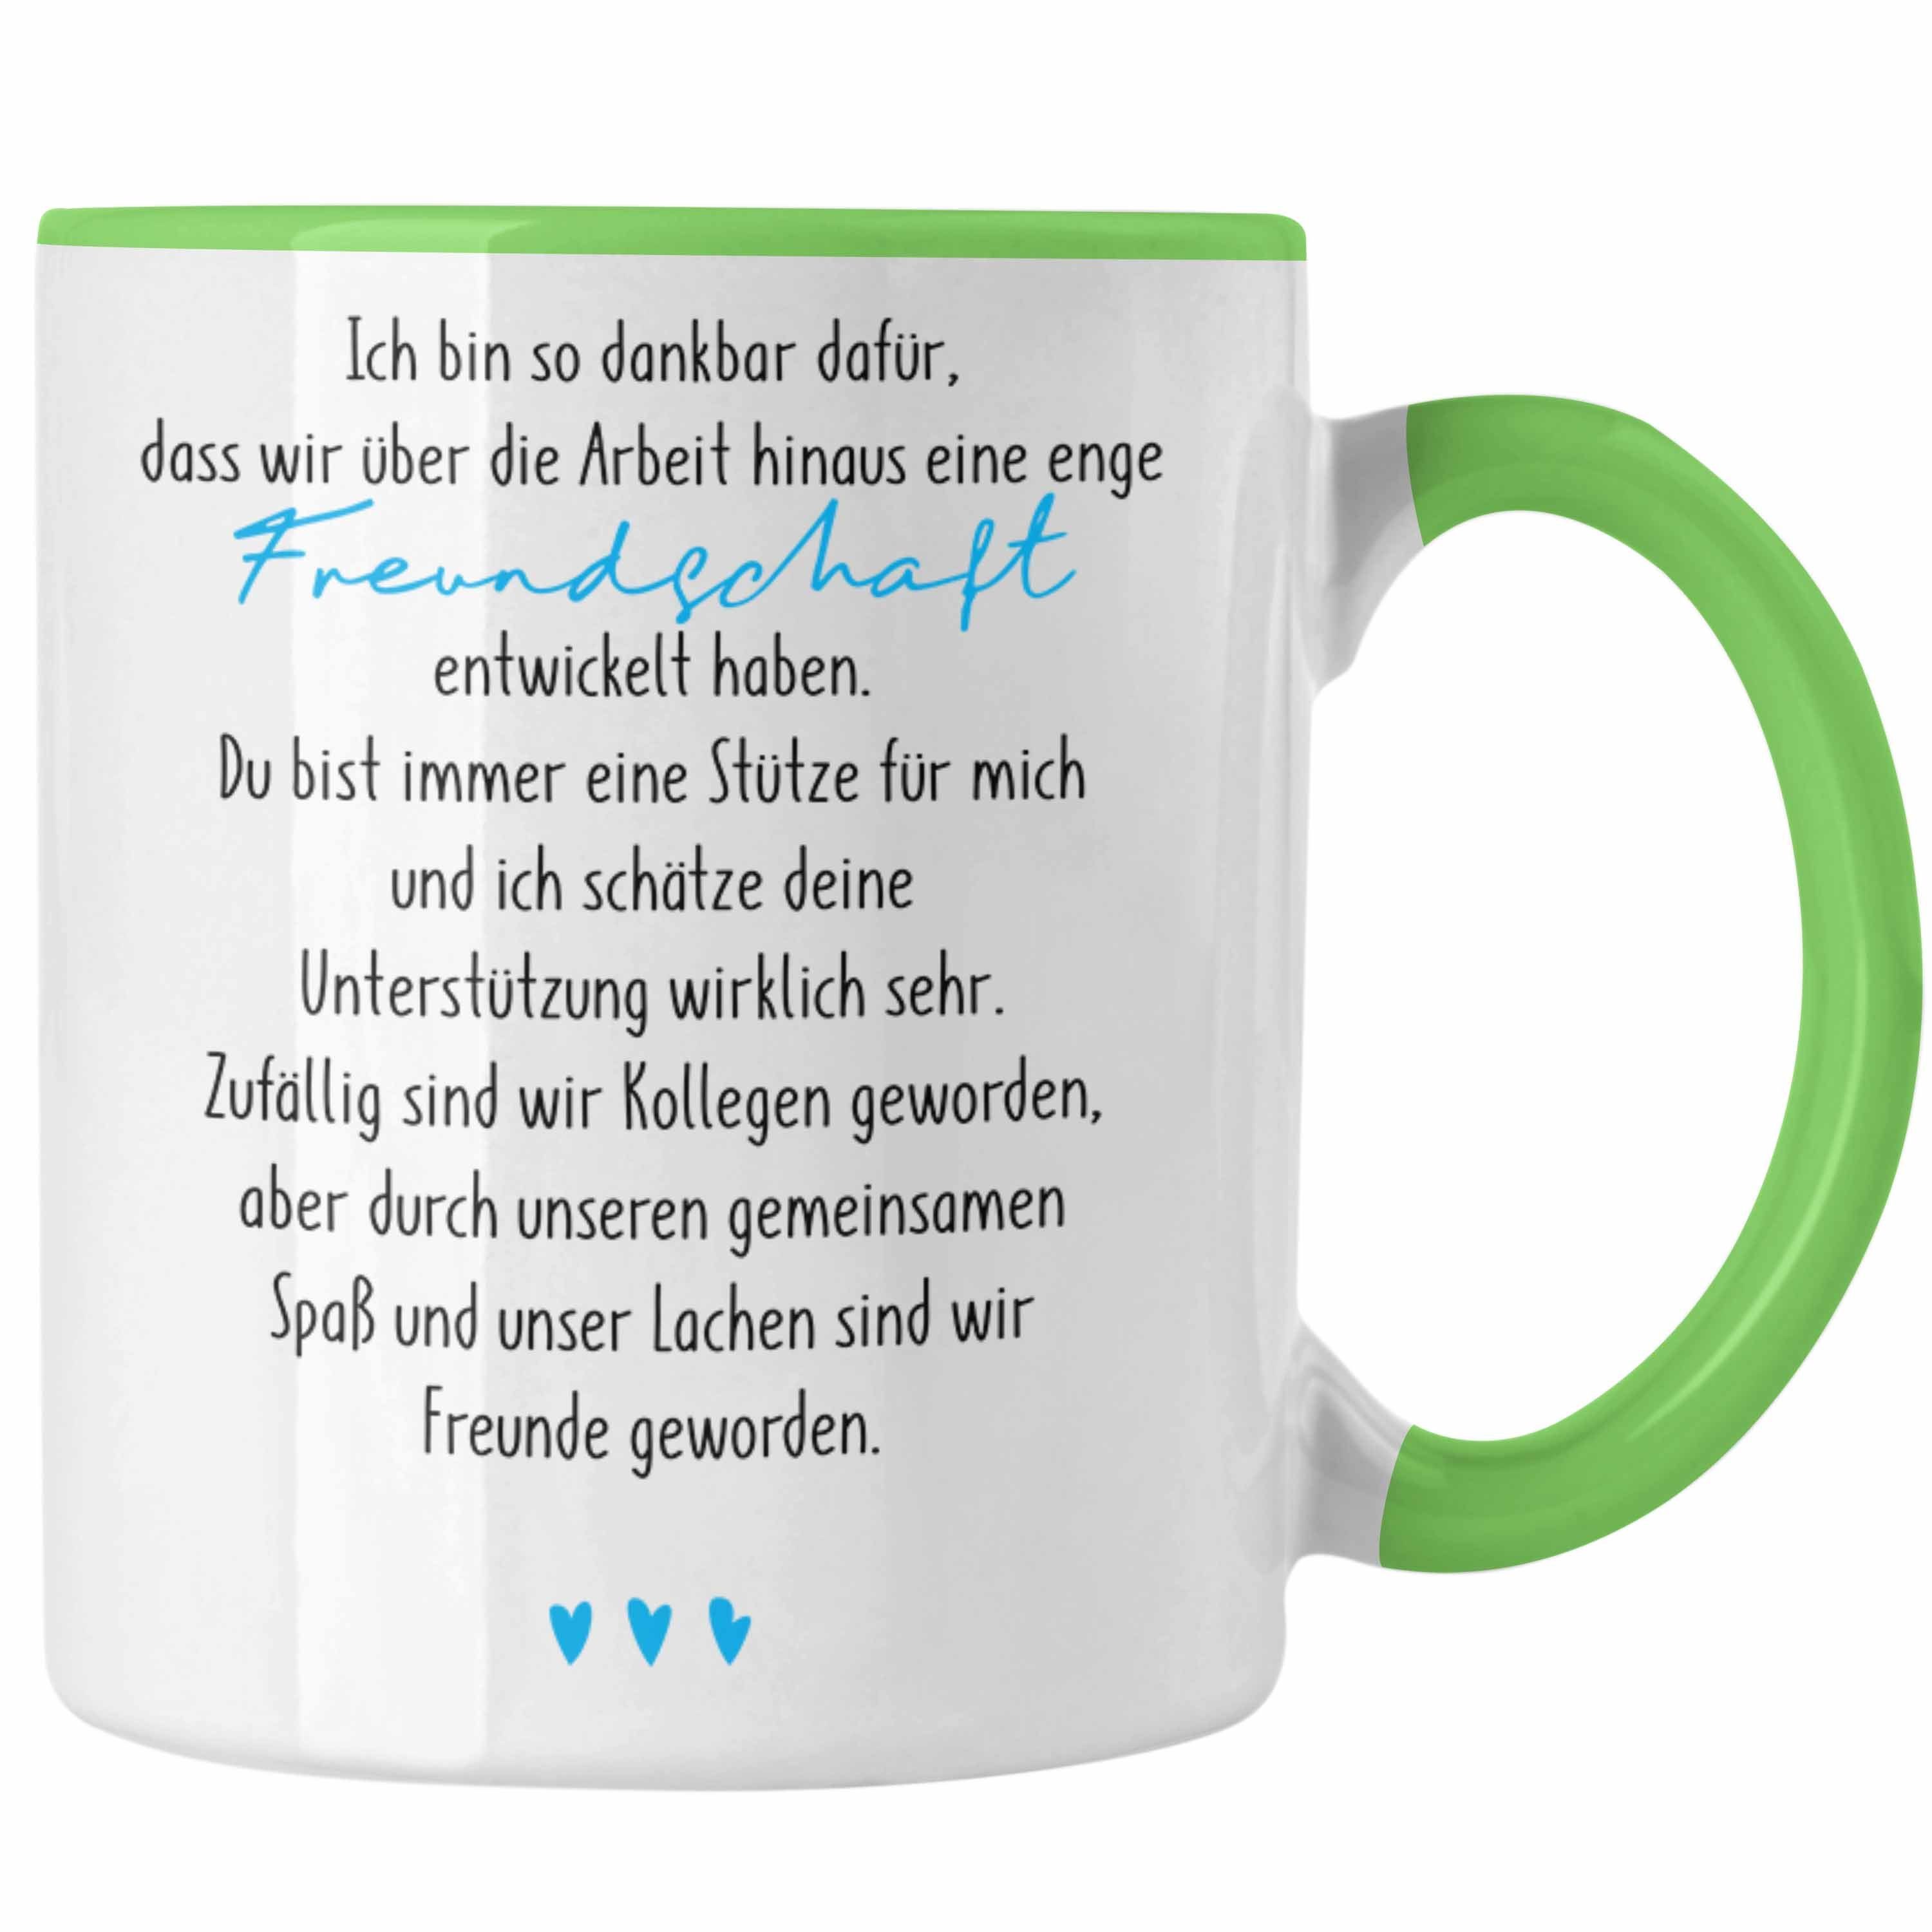 Trendation Kollegin Freundschaft Arbeitskollegin - Trendation Geschenk Grün Tasse Tasse